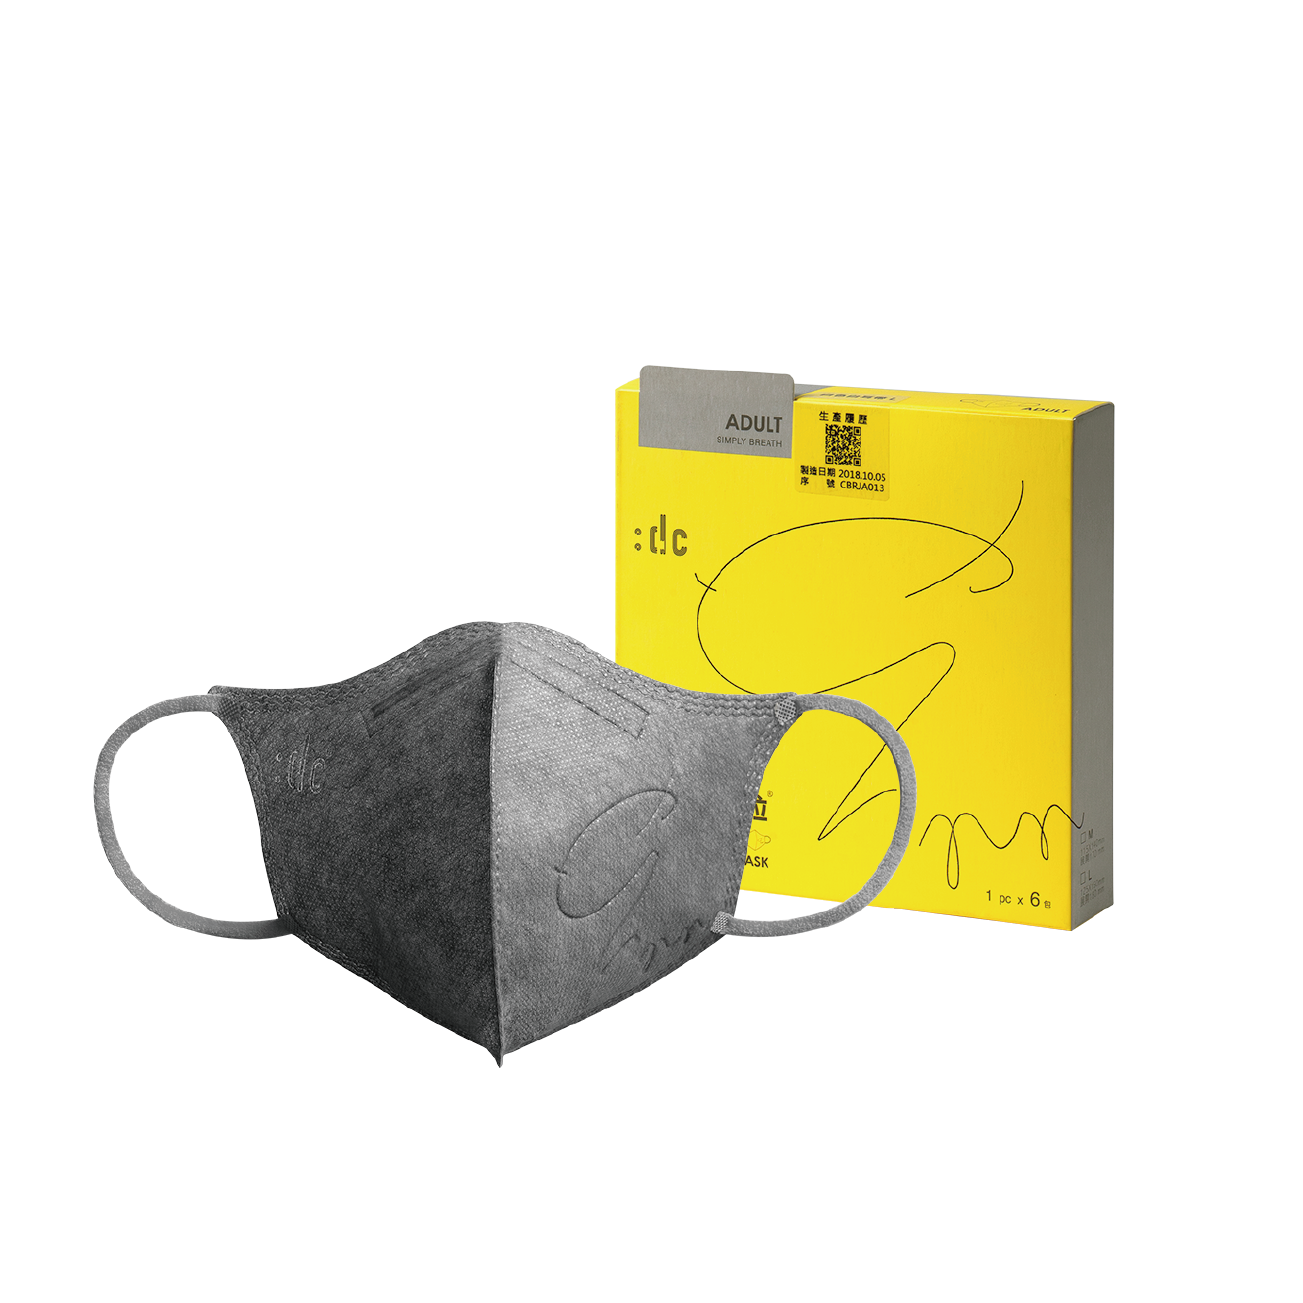 《:dc 克微粒》奈米薄膜立體口罩 灰口罩+灰耳帶  (6片/盒) 1盒  成人款